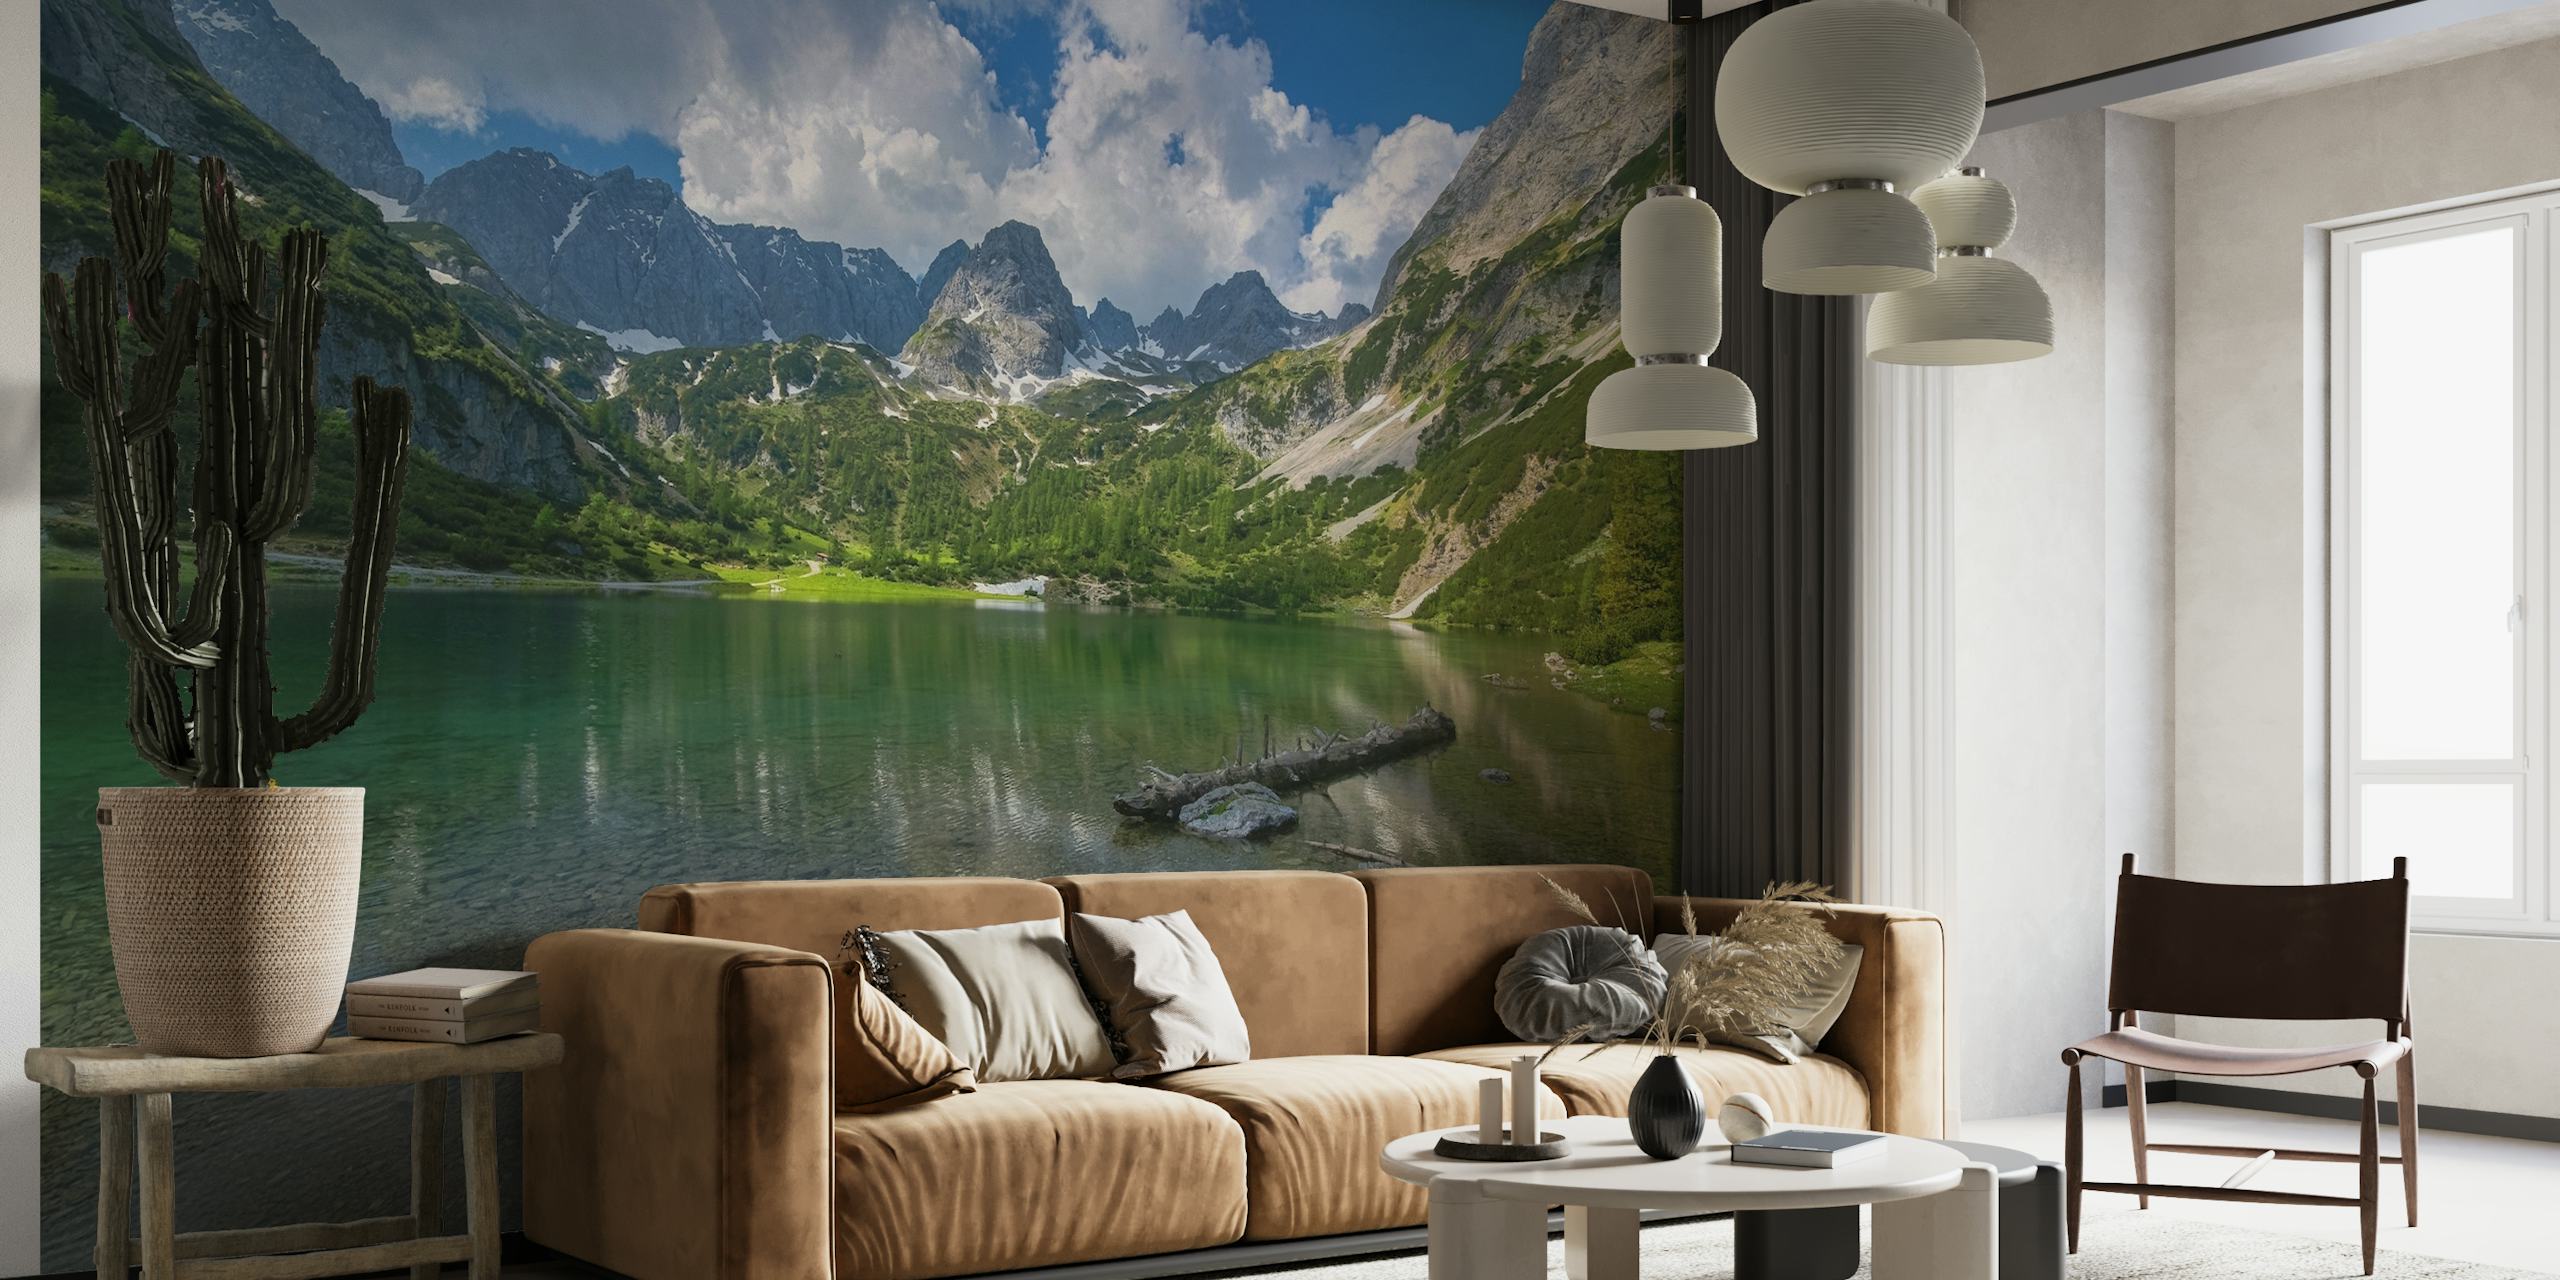 Fototapeta Seebensea at Tirol zobrazující klidné alpské jezero s horskými odrazy